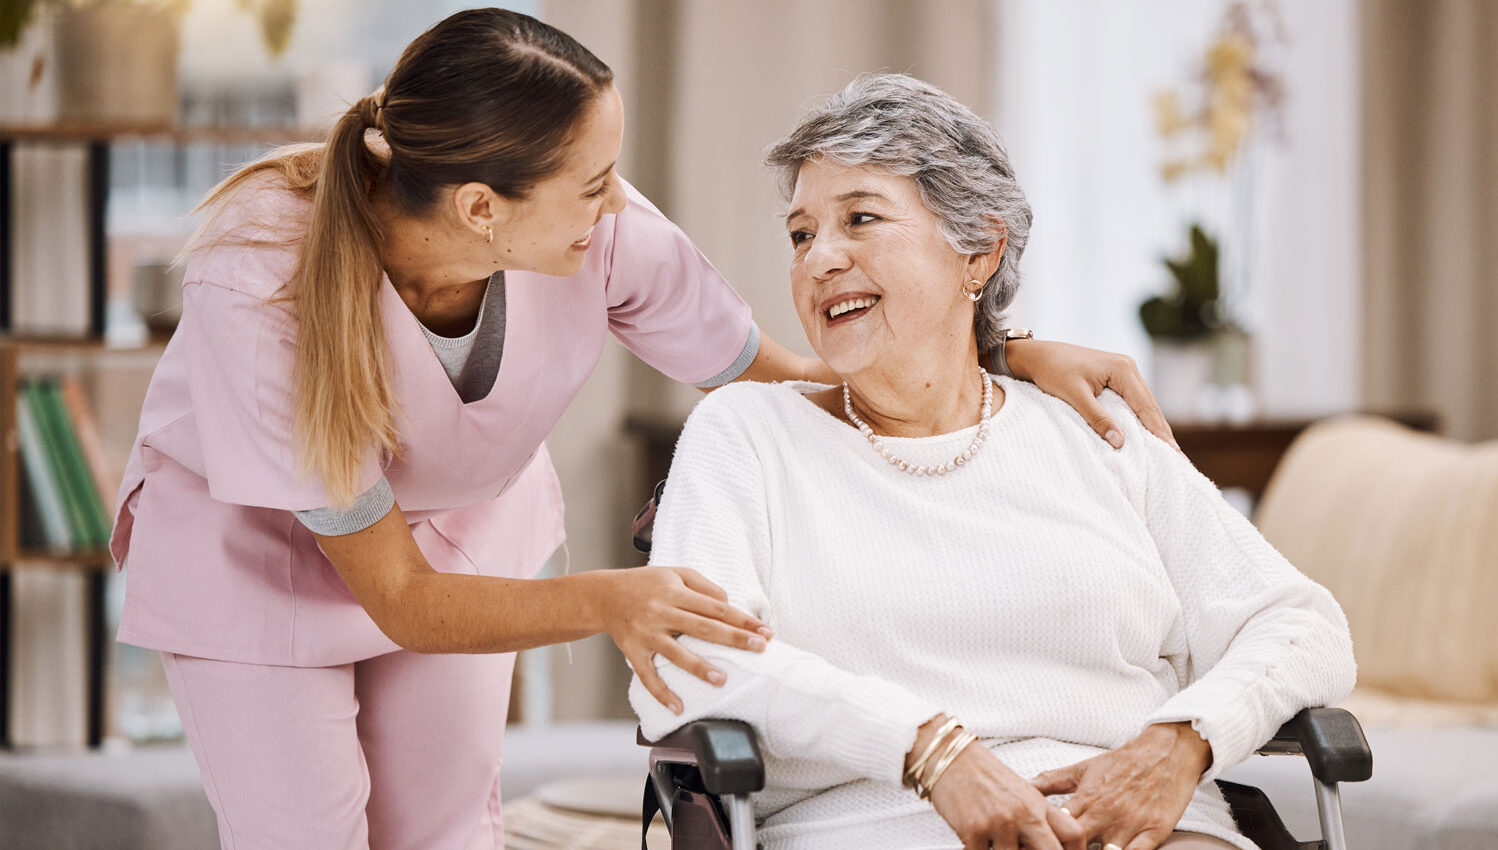 Enfermera de atención domiciliaria vestida de rosa ayudando a un paciente anciano en silla de ruedas